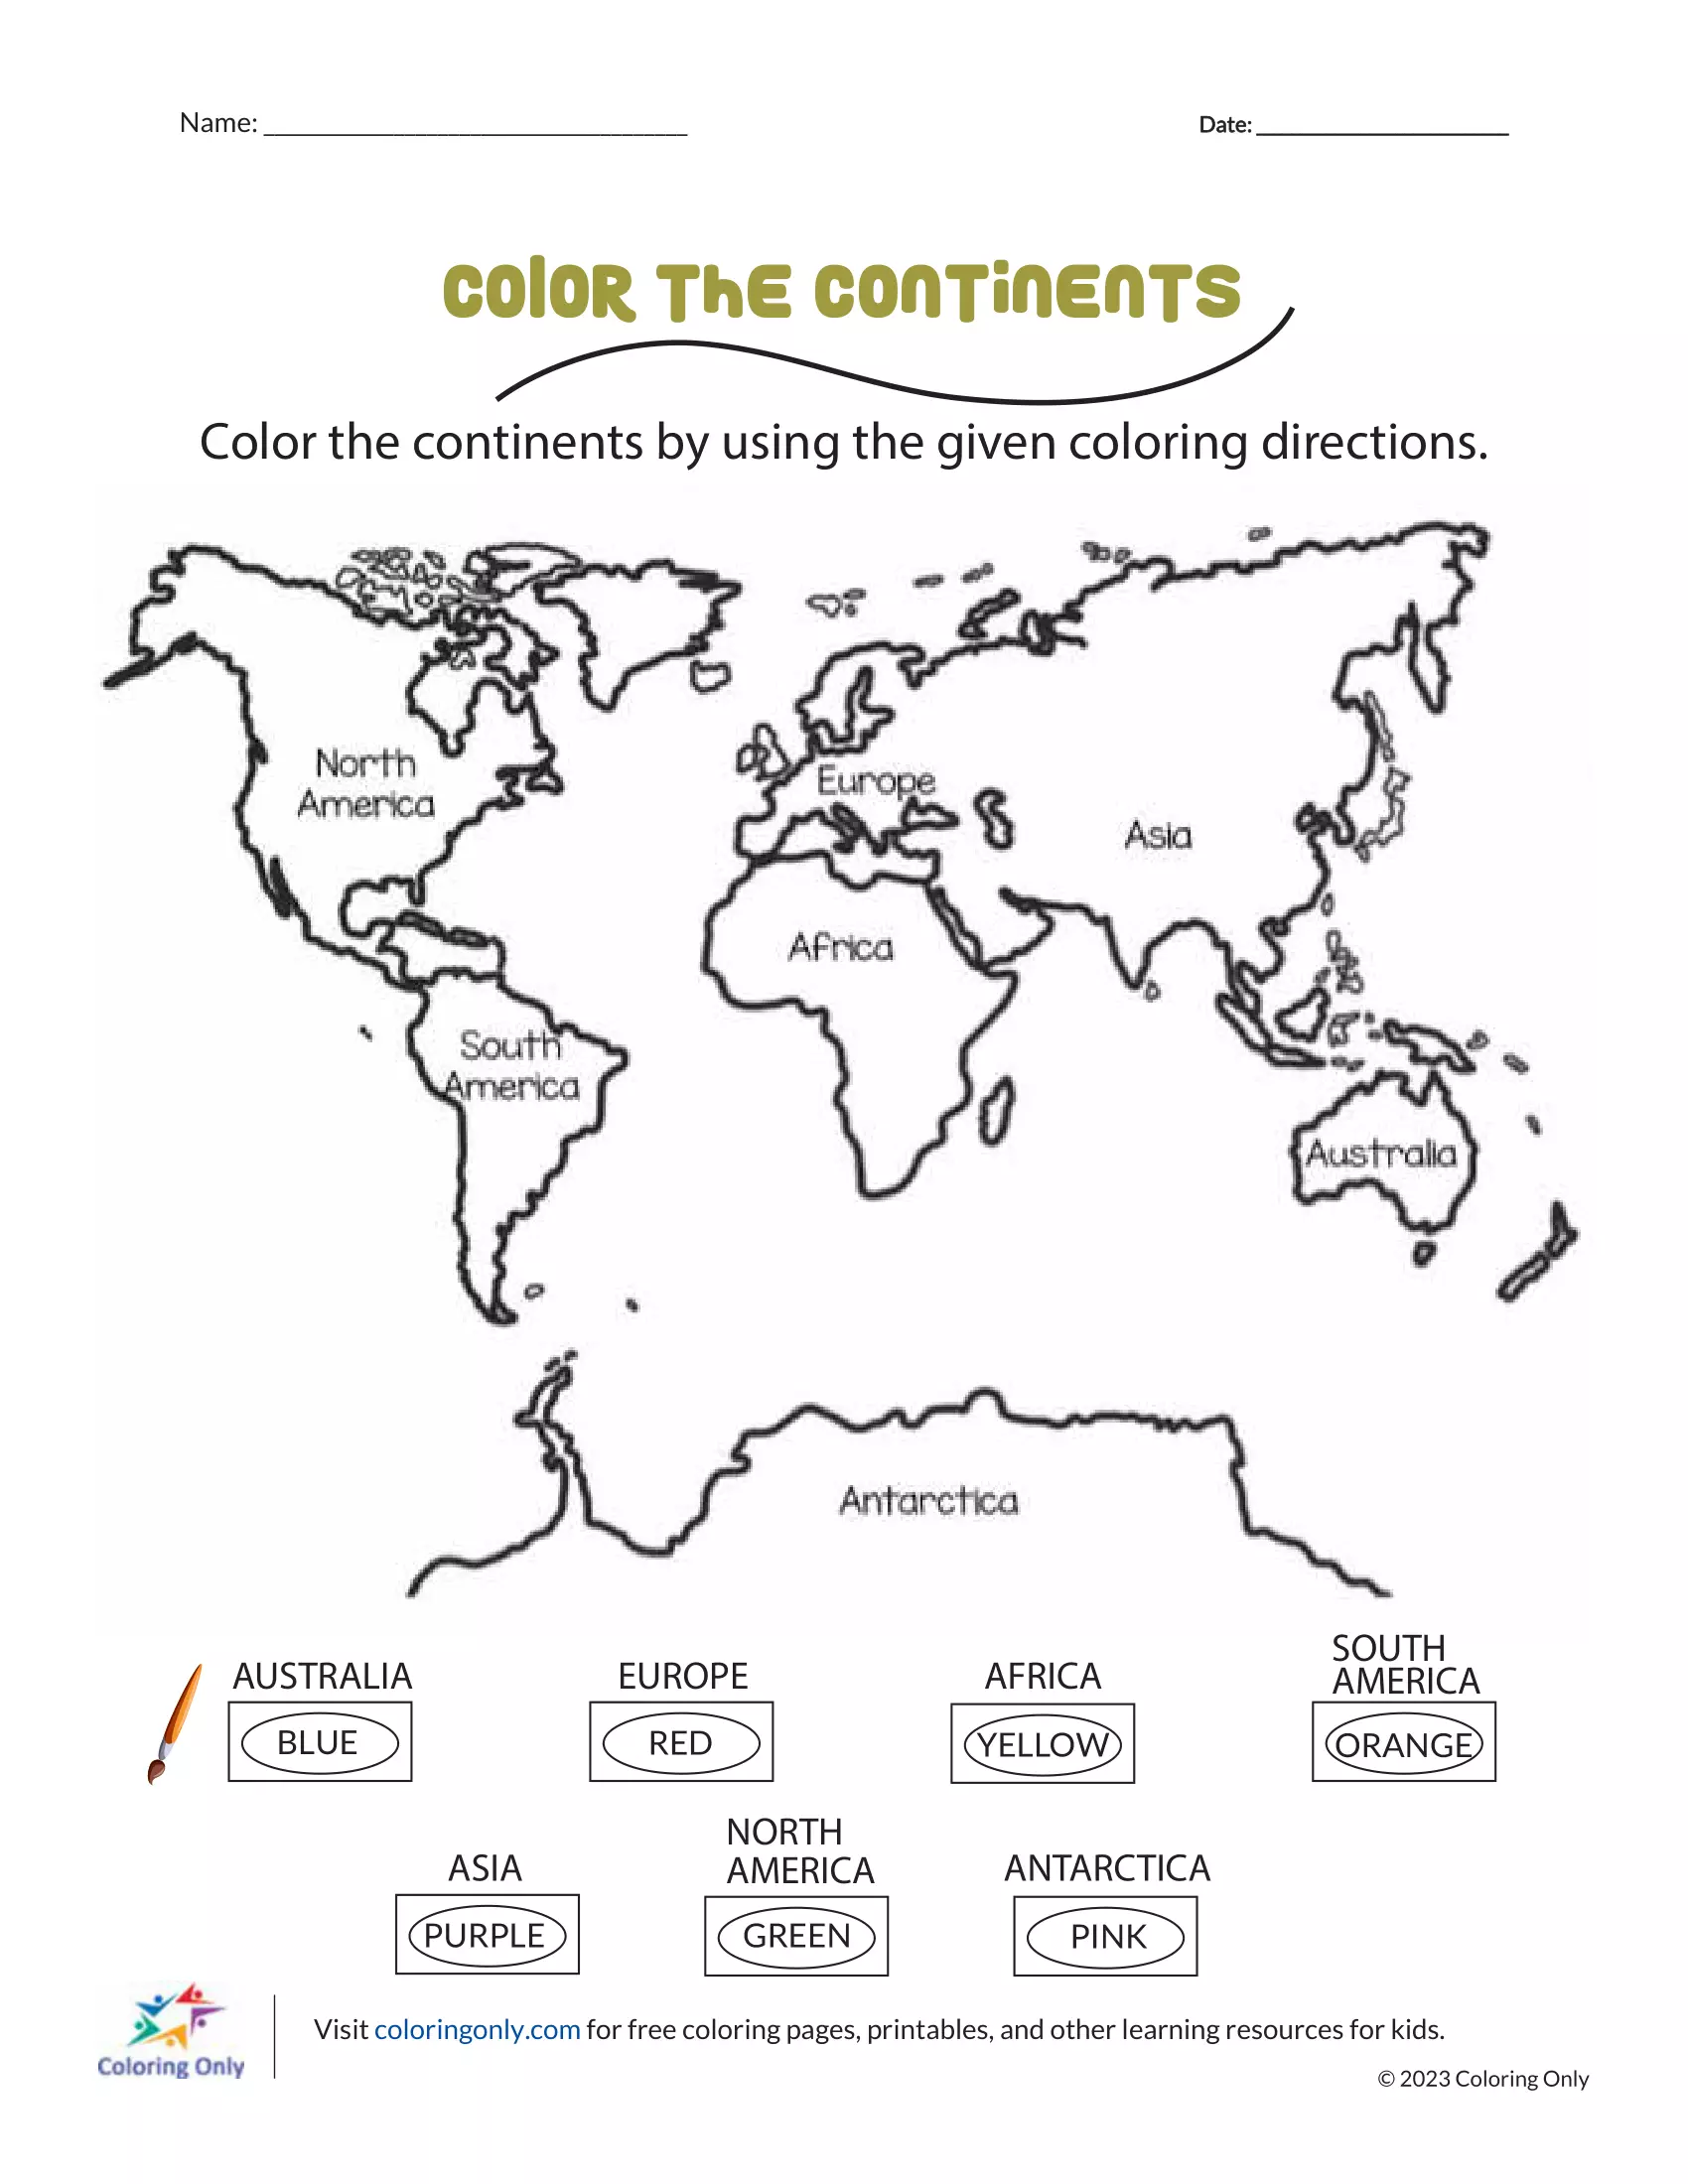 Färben Sie die Kontinente